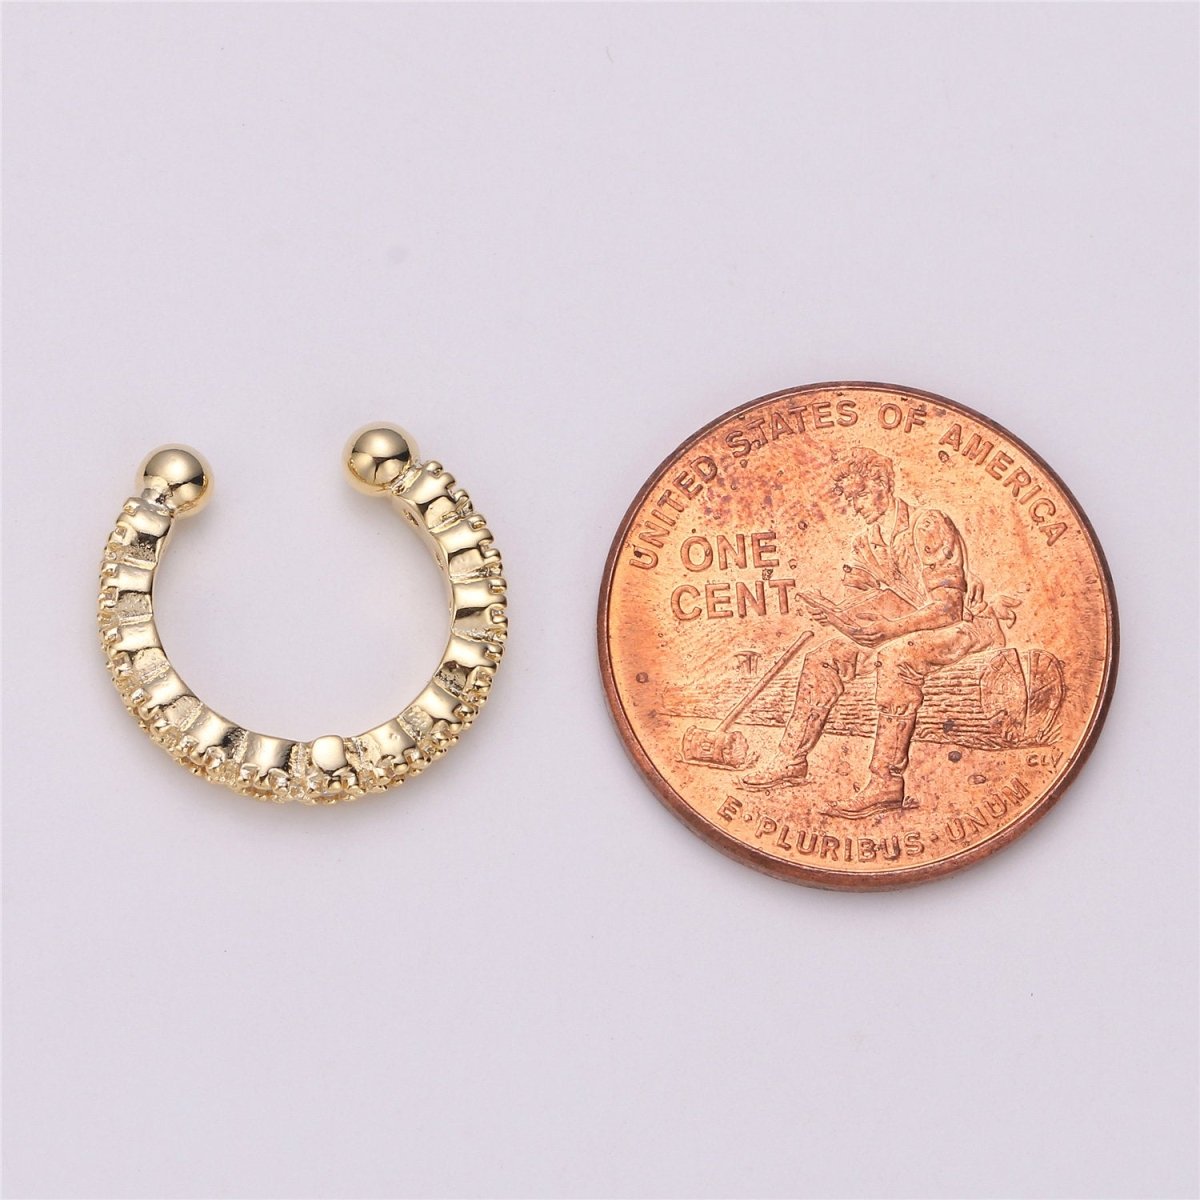 Ear cuff no piercing Gold, ear cuff cz, dainty cuff, gold ear cuff minimalist jewelry conch cuff cartilage cuff K-110 - DLUXCA